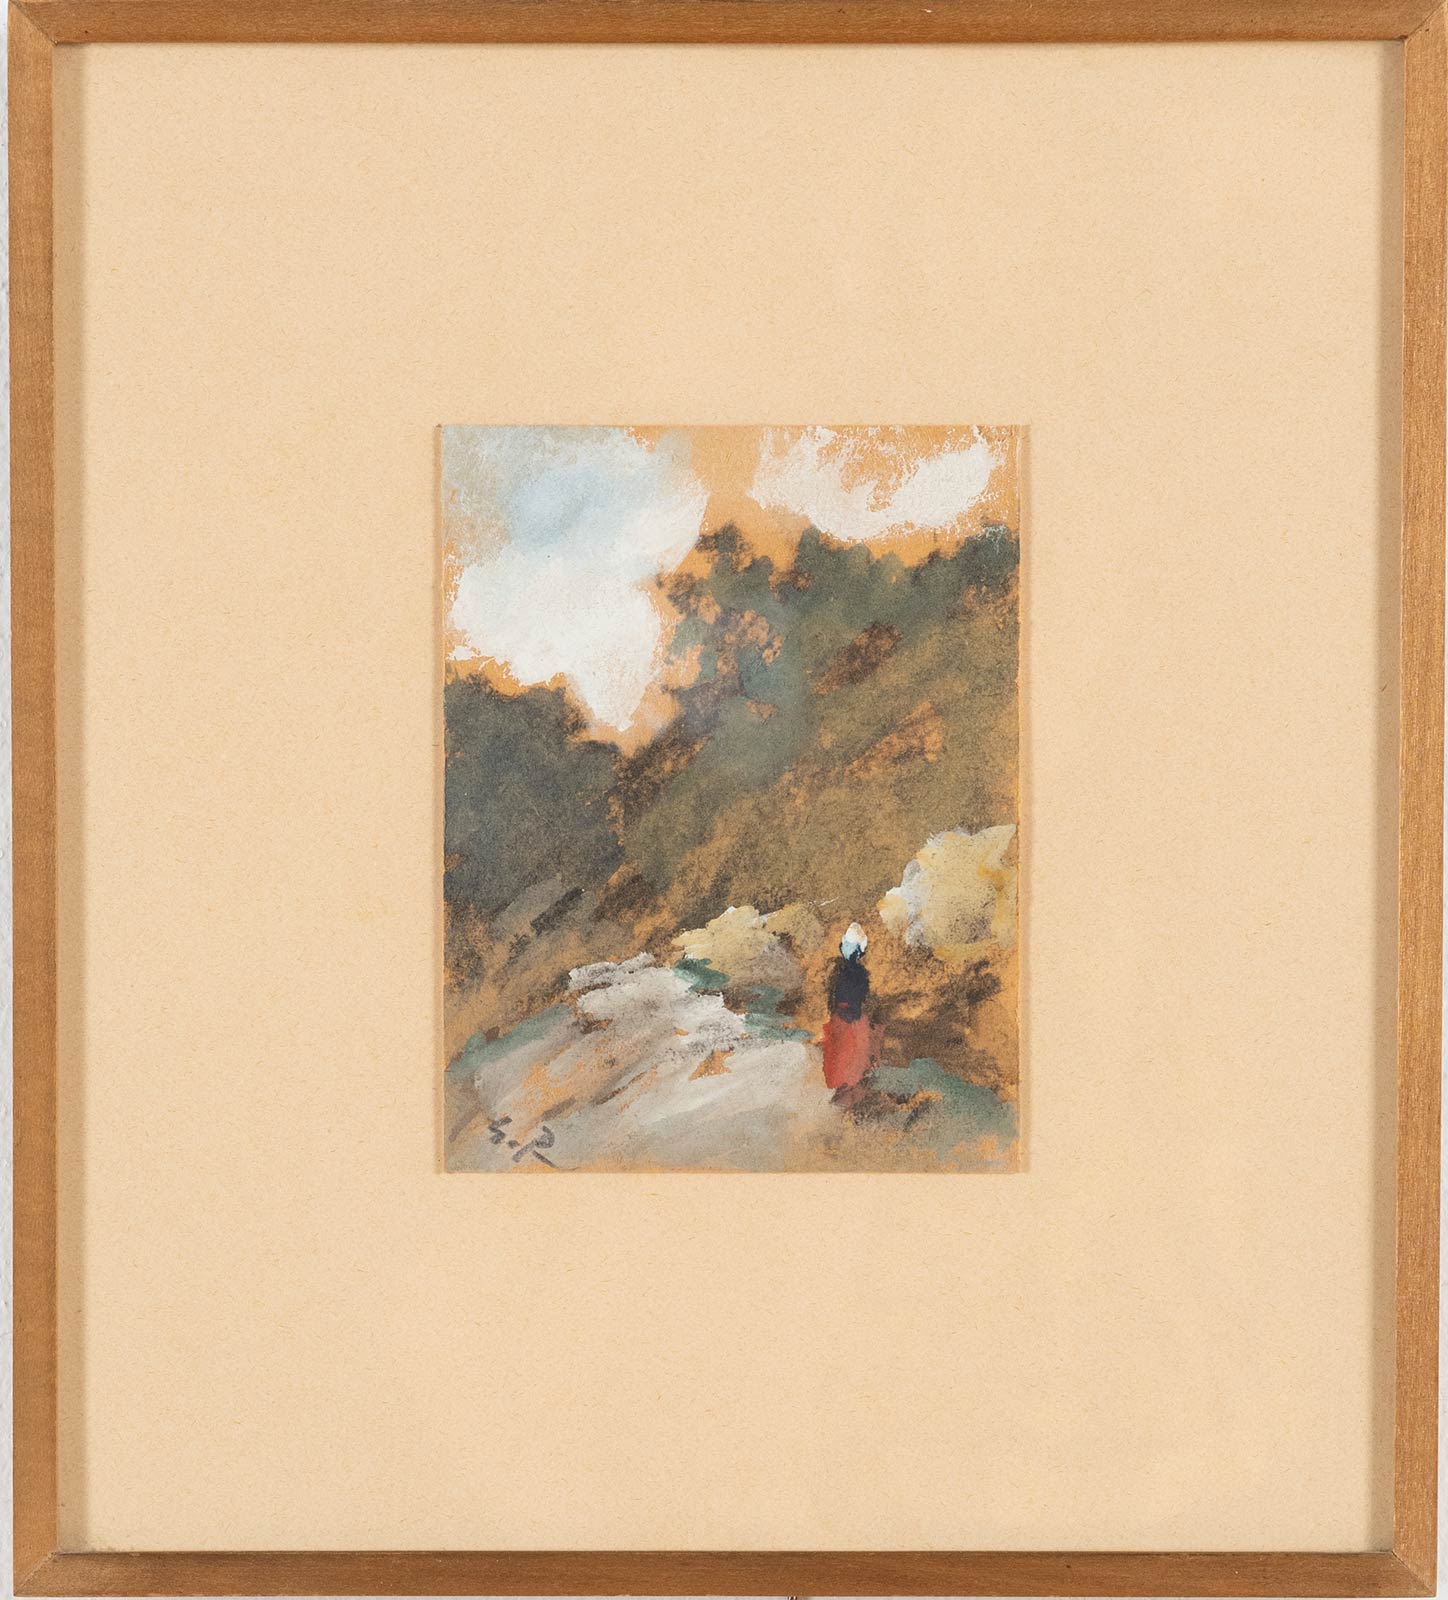 Guglielmo Pizzirani (Bologna 1886 - 1971), “Paesaggio con figura”.